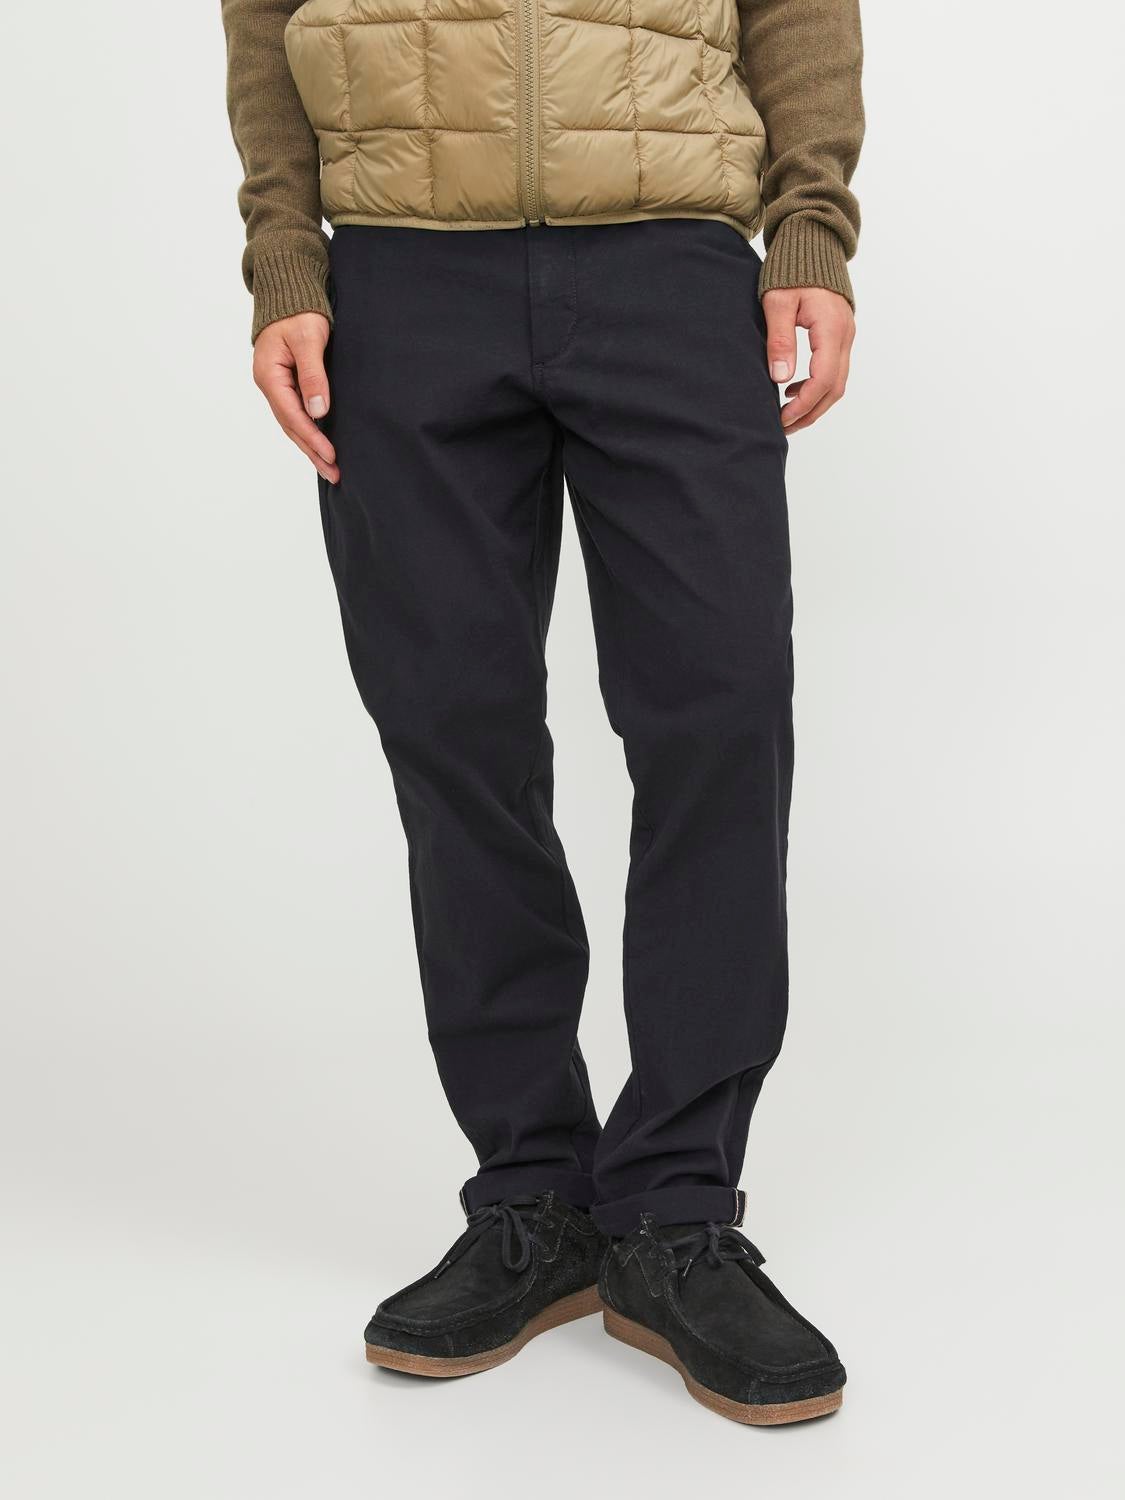 9.9 💖 | Tap tap trousers 550฿ สี: ดำ,เทา,ครีม กางเกงเอวสูงทรงขากระบ�... |  Instagram